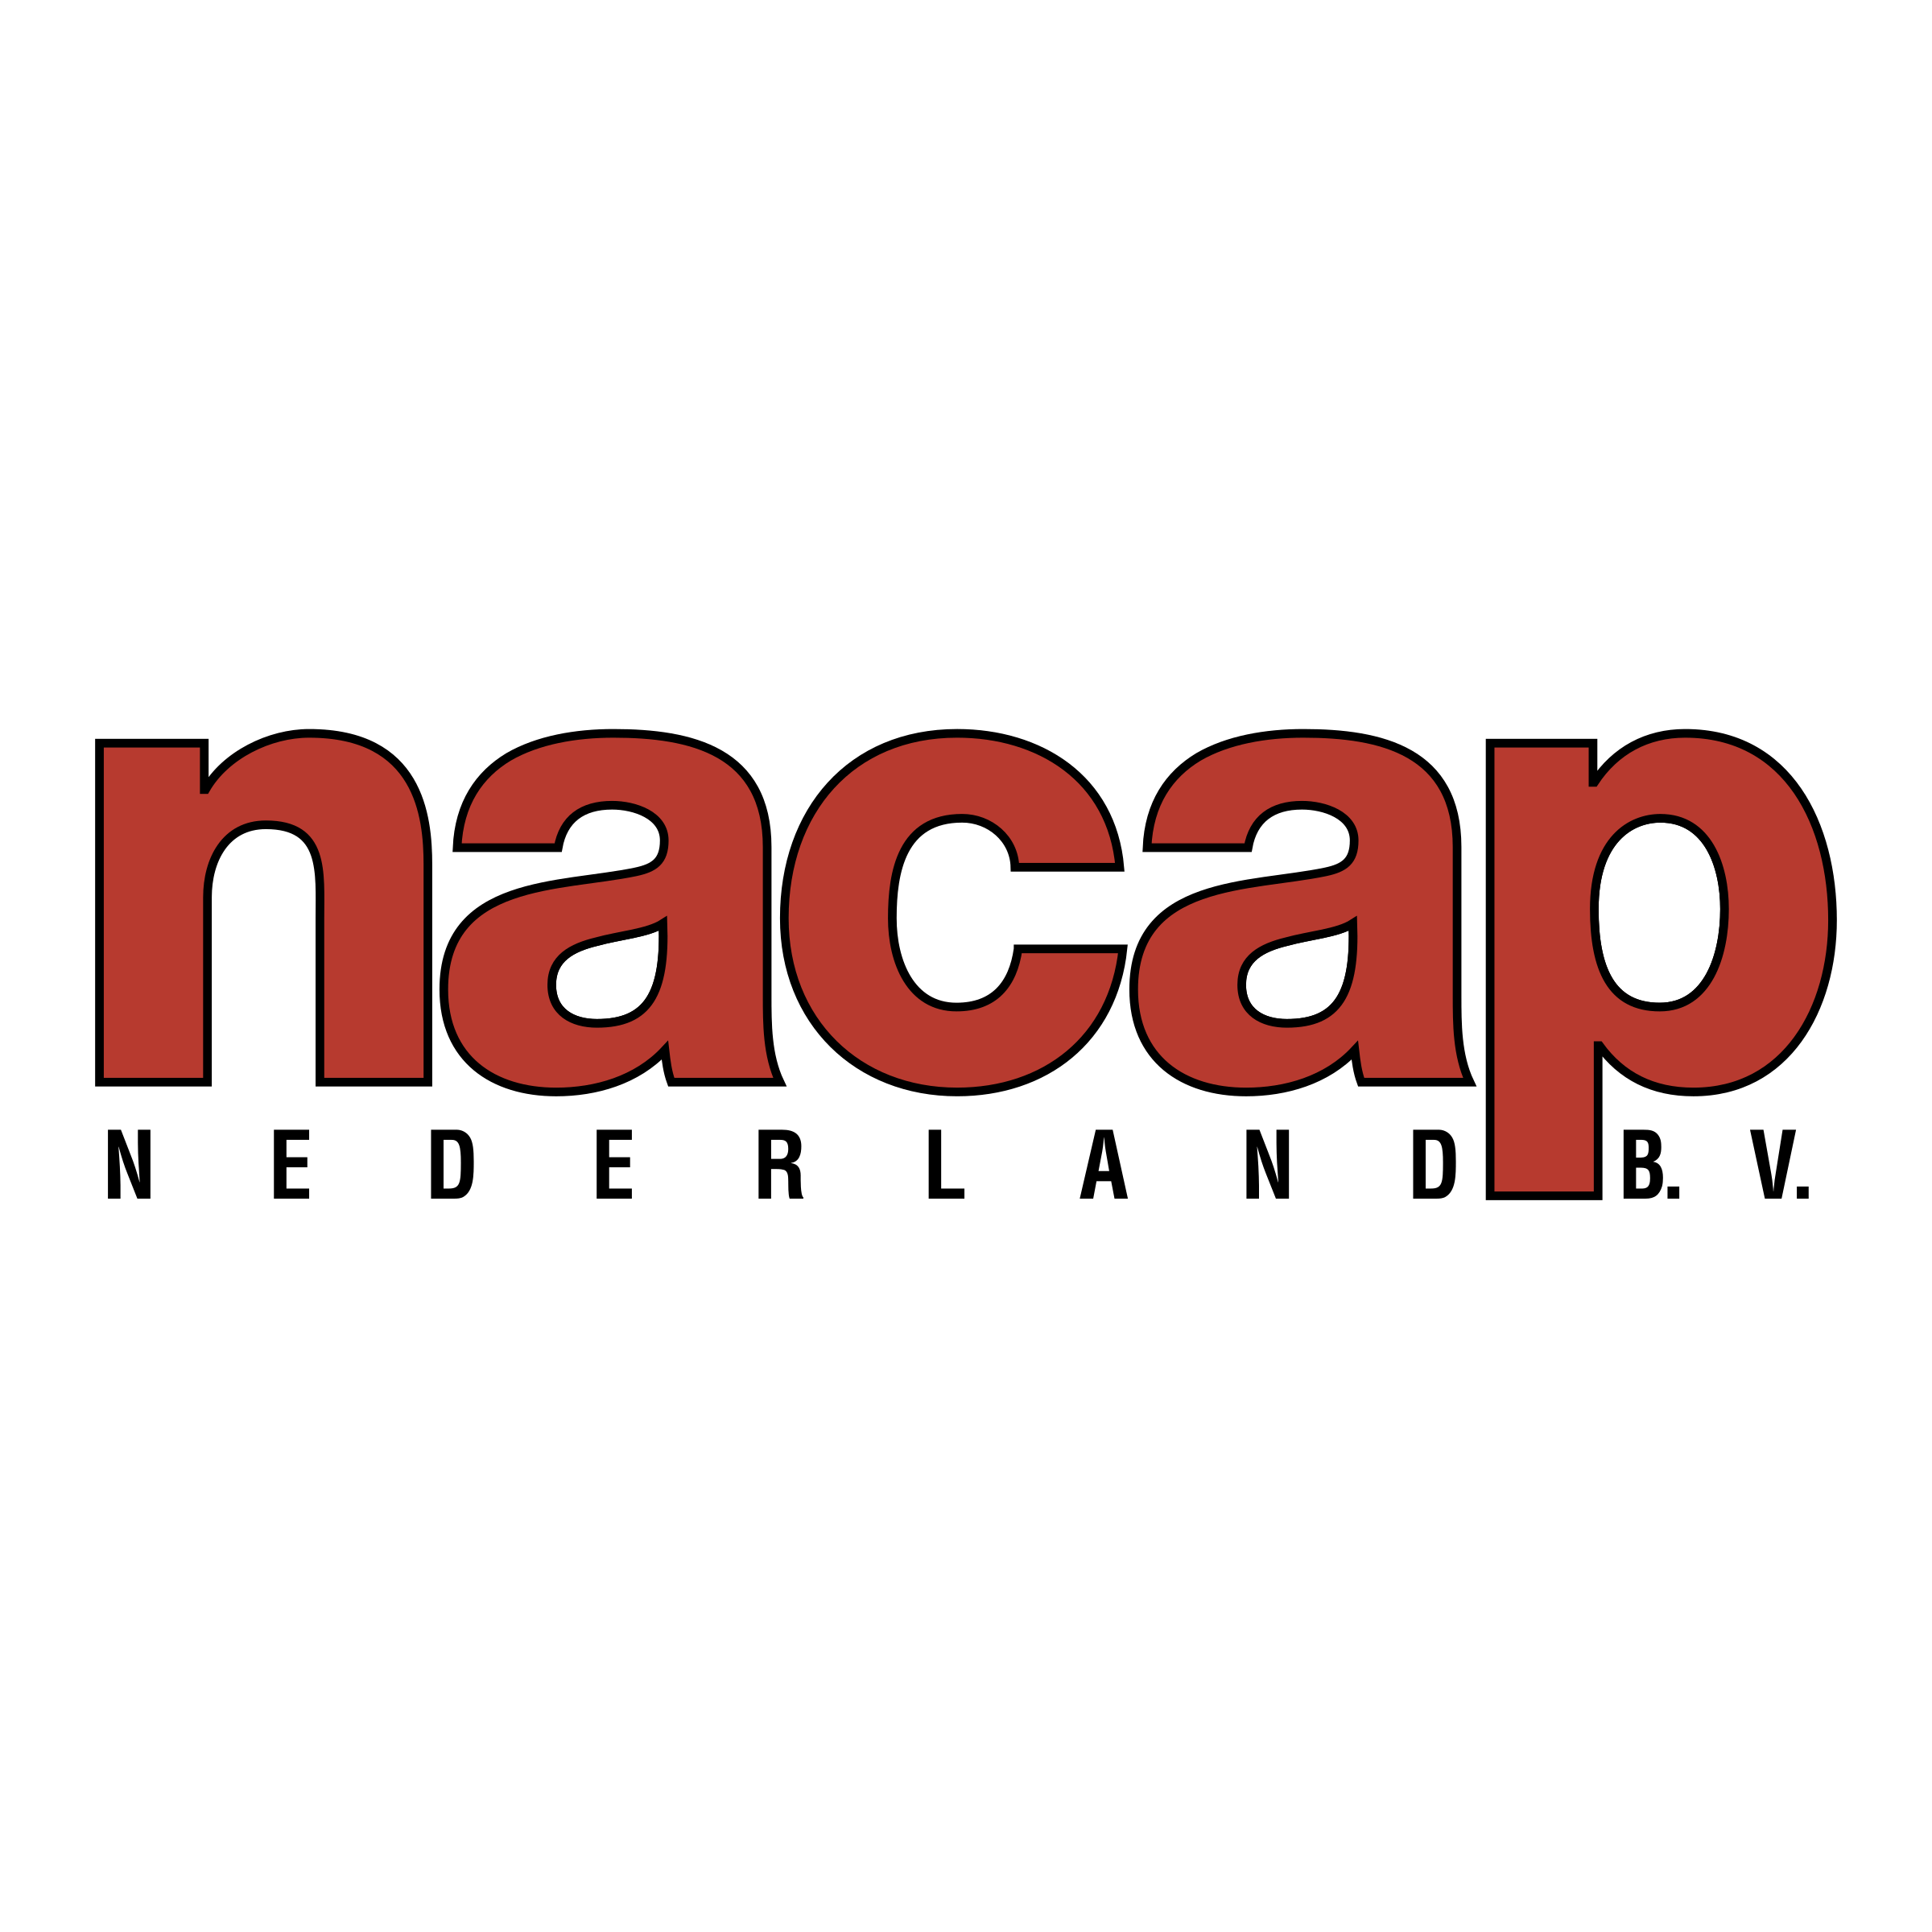 BV Logo - Nacap Nederland BV Logo PNG Transparent & SVG Vector - Freebie Supply